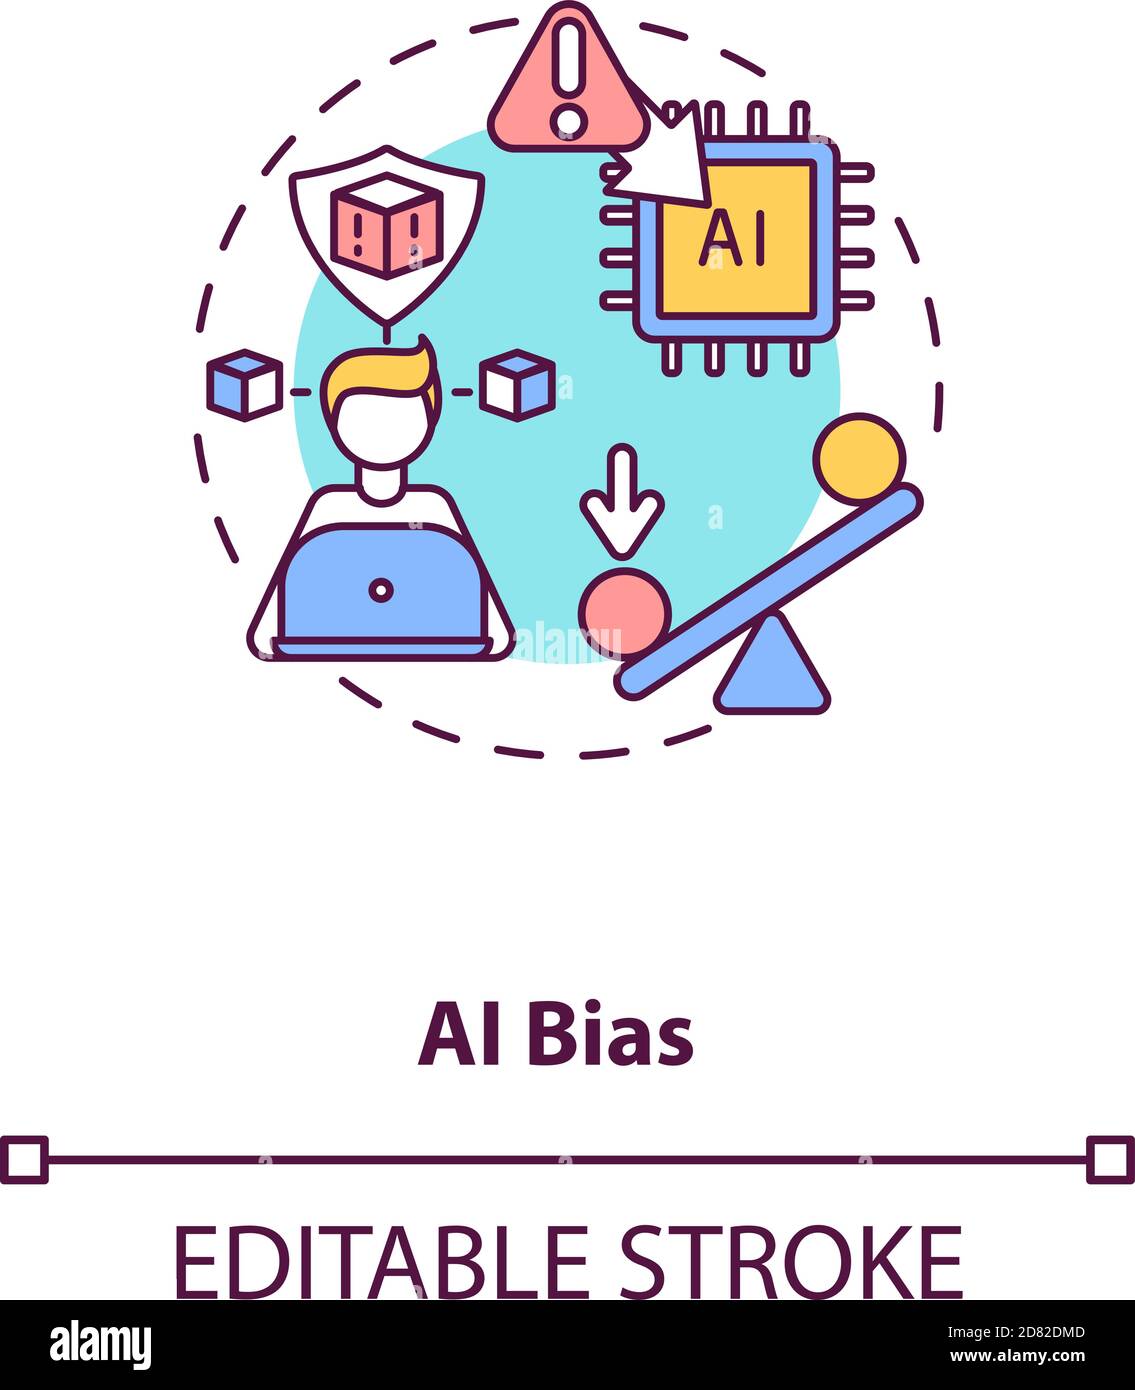 AI bias concept icon Stock Vector